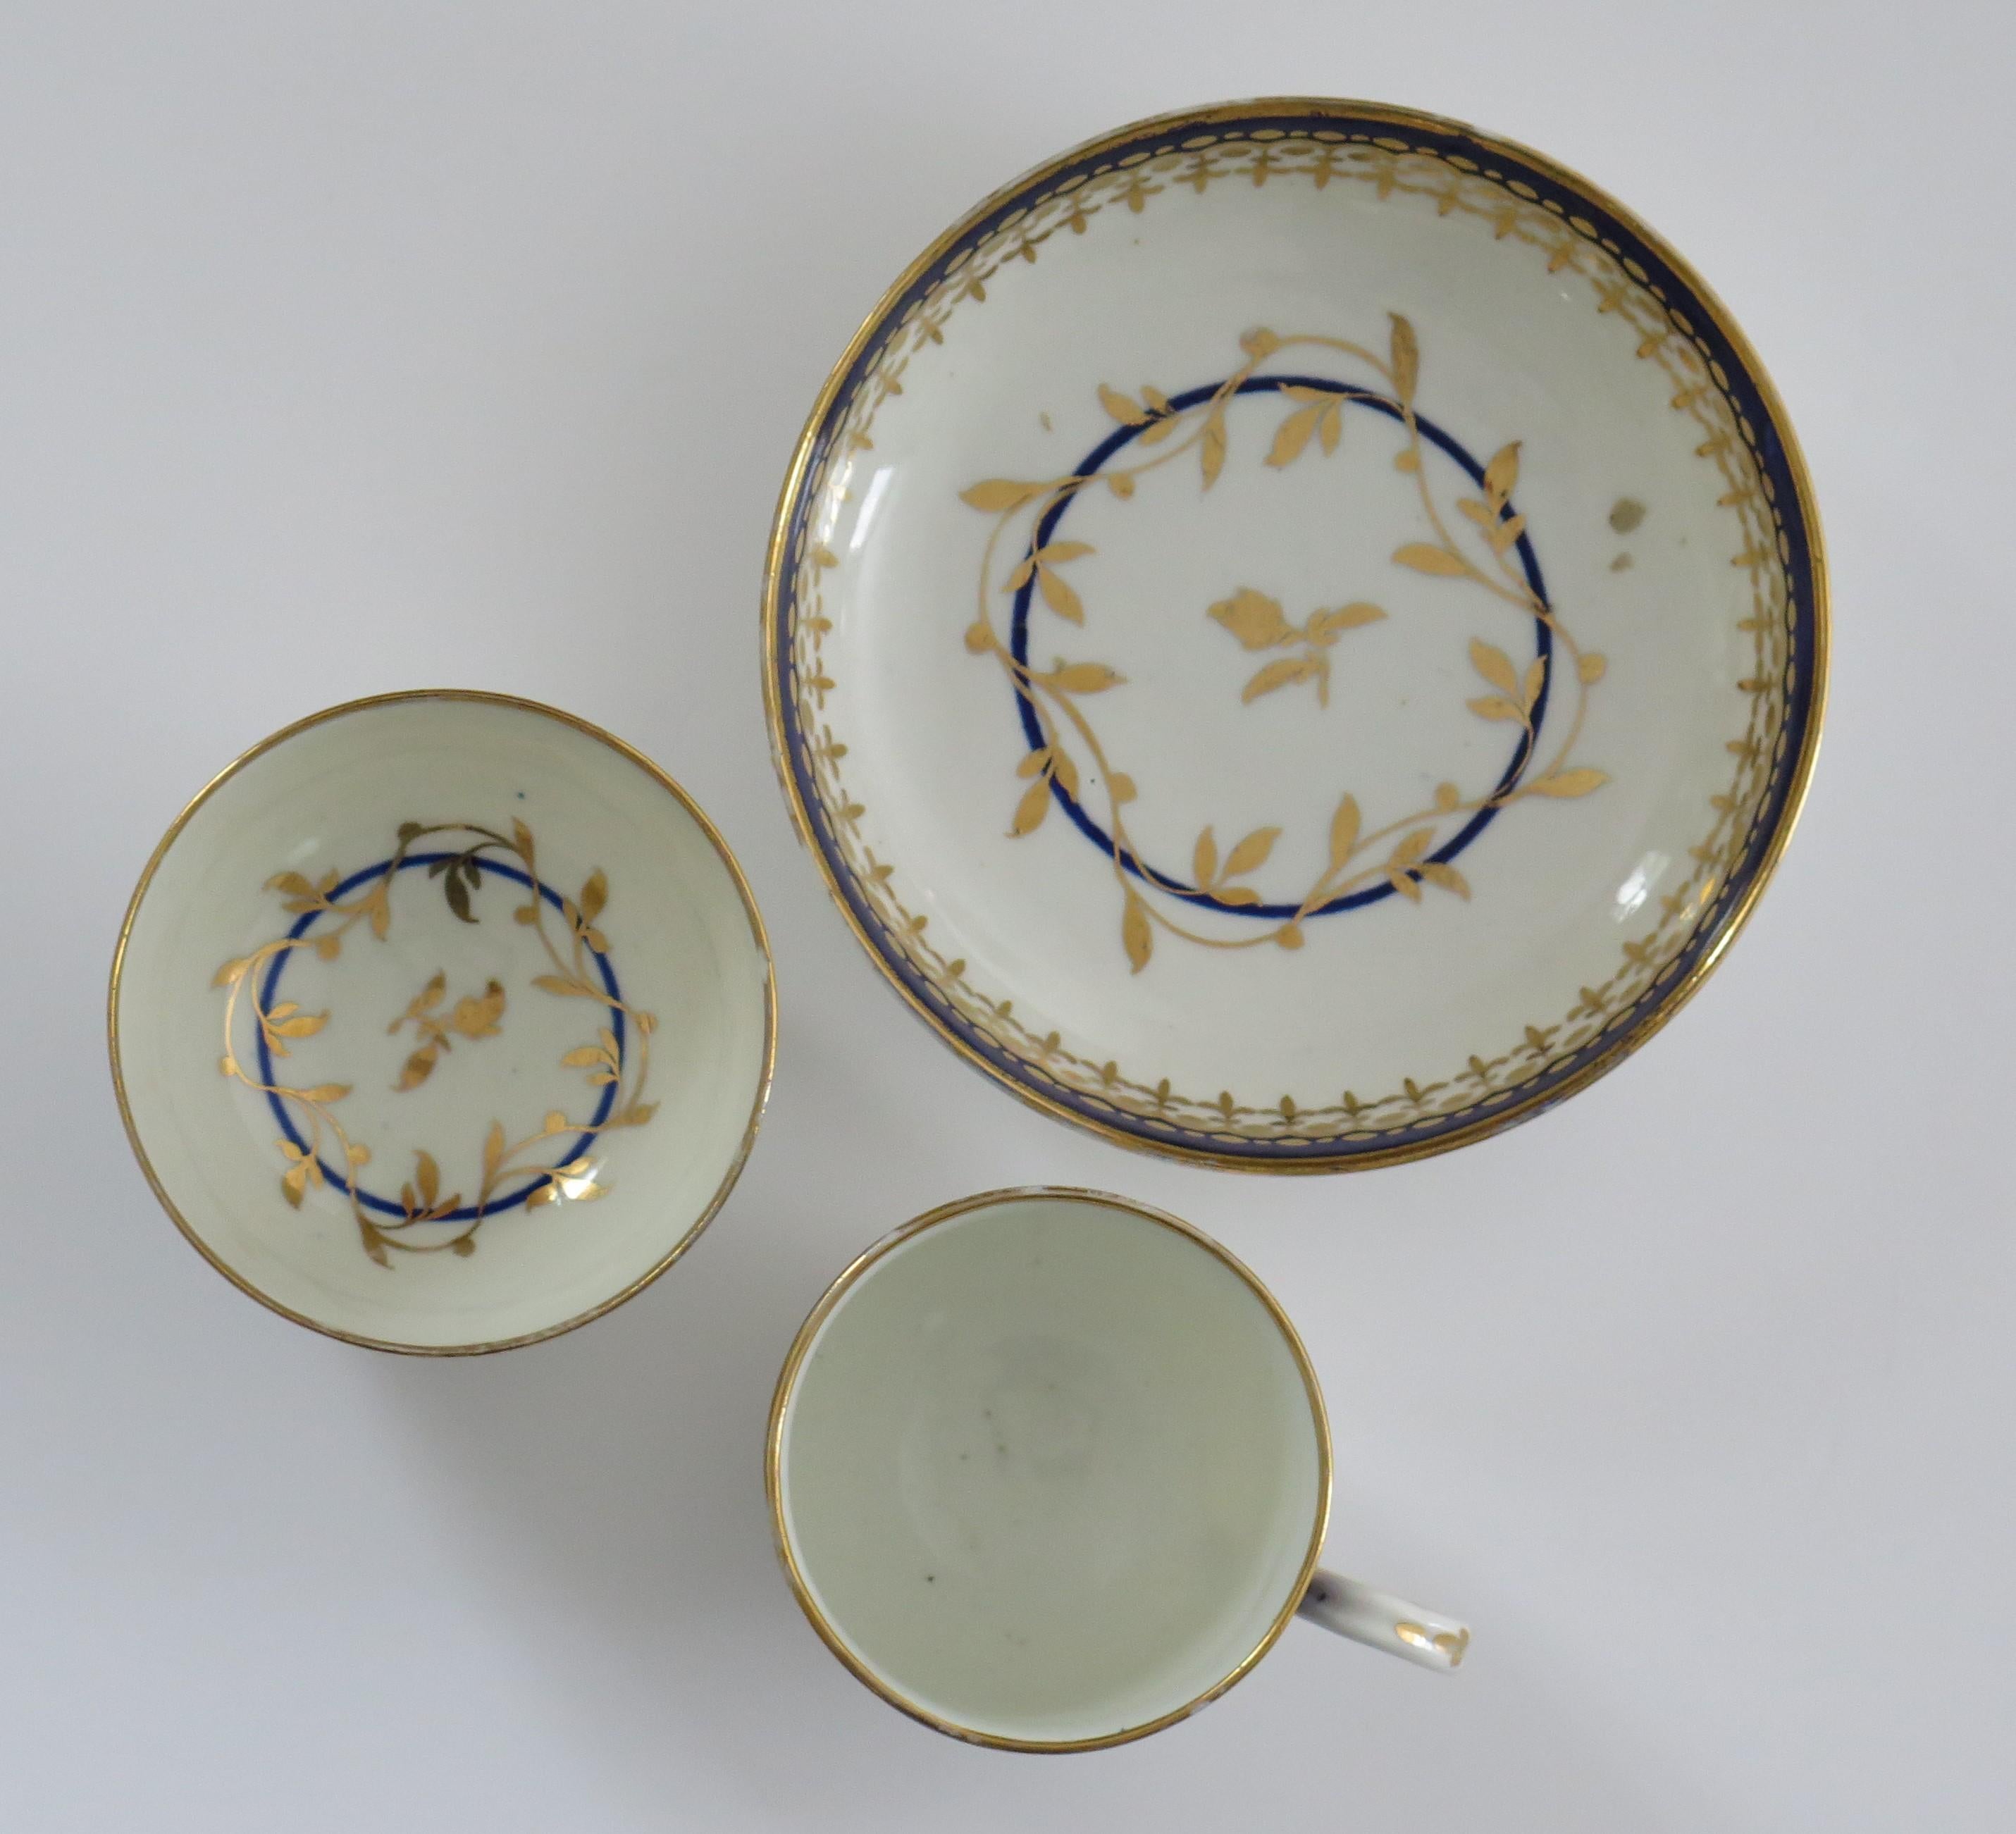 Dies ist eine gute späten 18. Jahrhundert Worcester Porzellan TRIO von Kaffee-Tasse, Tee-Schüssel und Untertasse in einem kombinierten blau und gold Muster, voll markiert und aus der Zeit um 1780.

Alle Stücke sind mit einem klassischen Muster aus